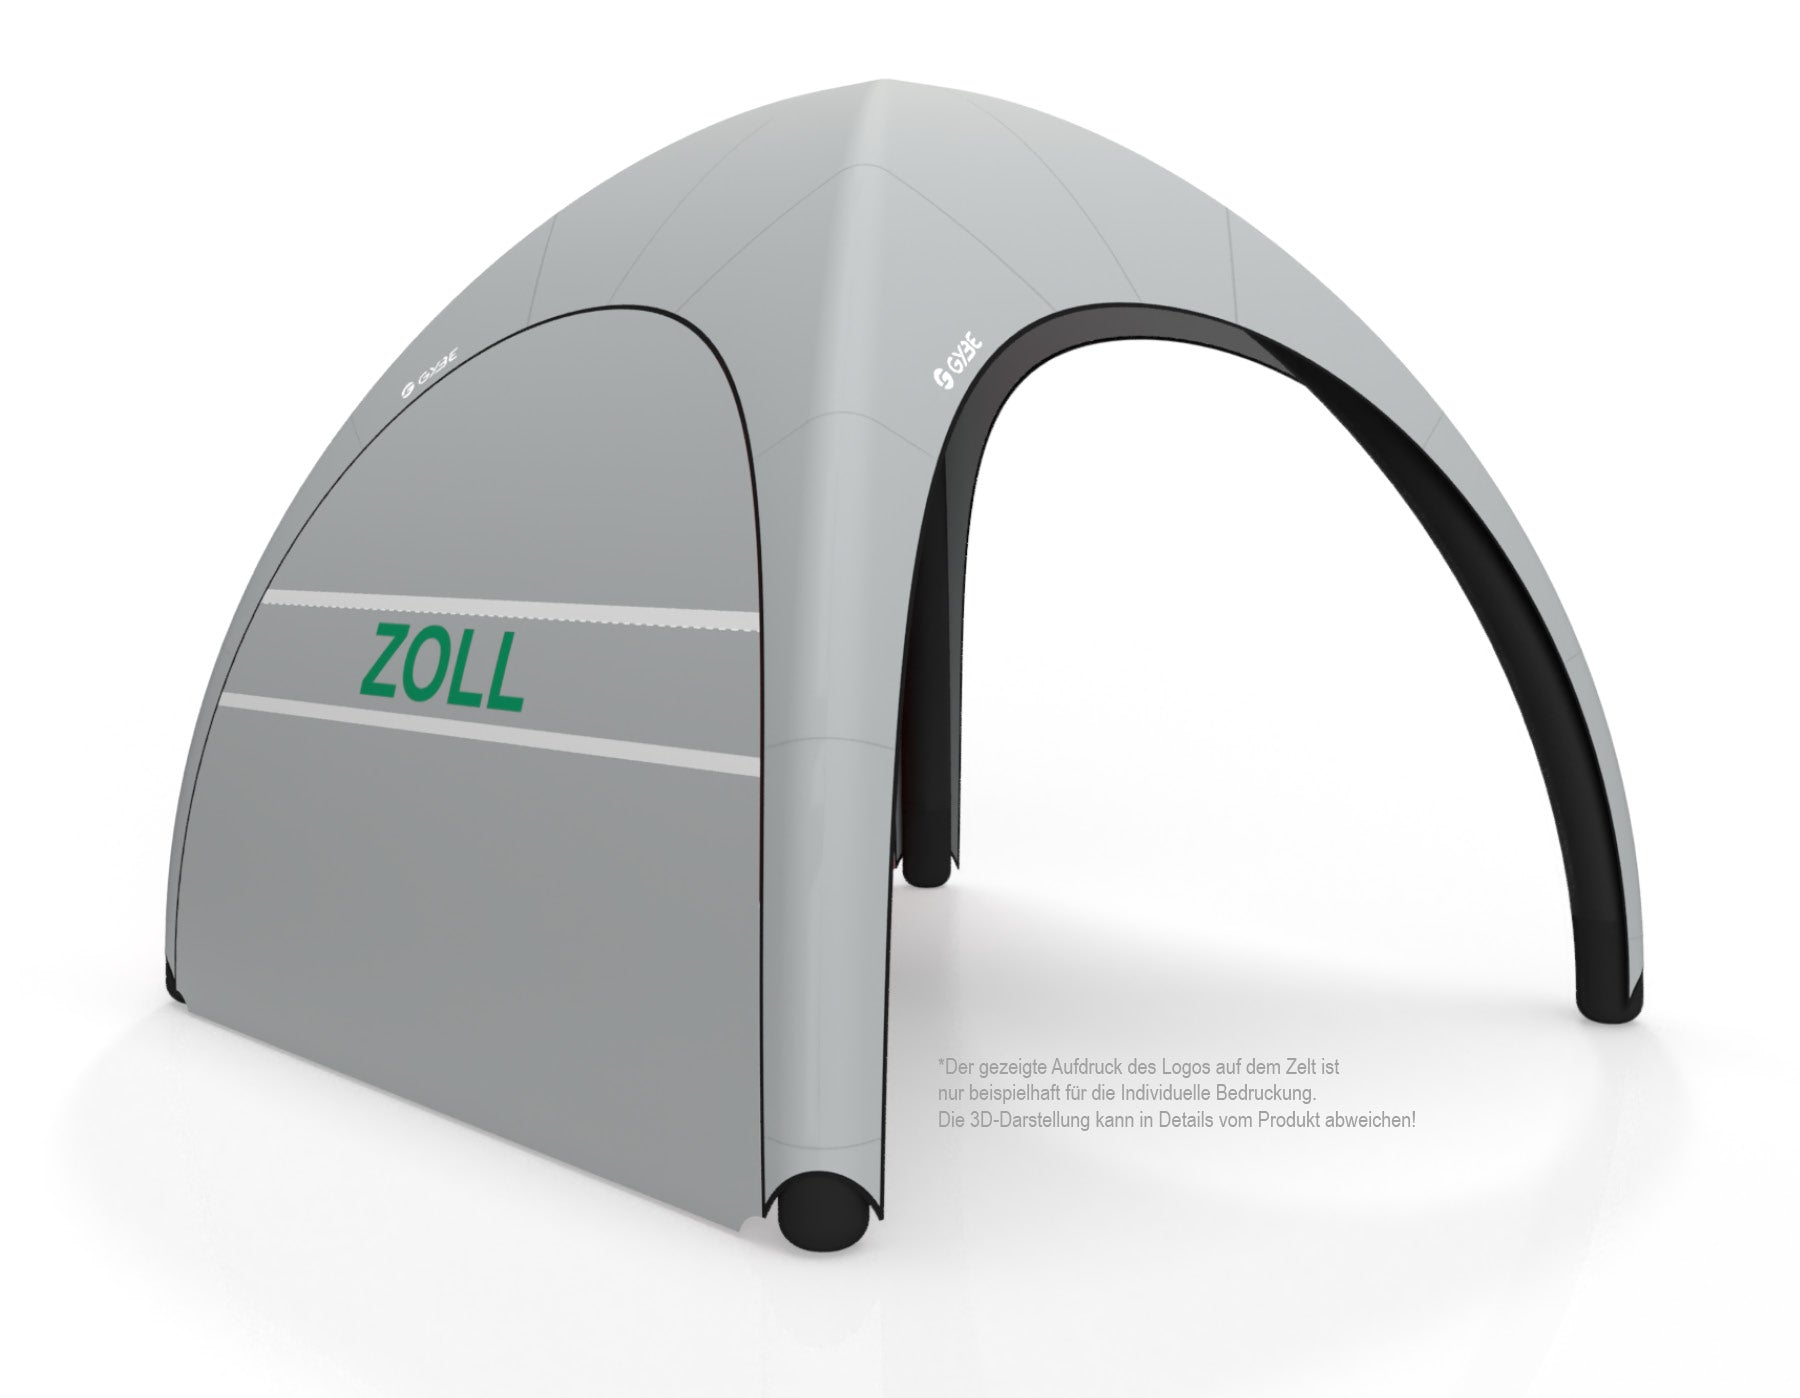 Aufblasbares Schnelleinsatzzelt Gybe Humanity Tent mit ZOLL Logo | Sanitätszelt | Einsatzzelt